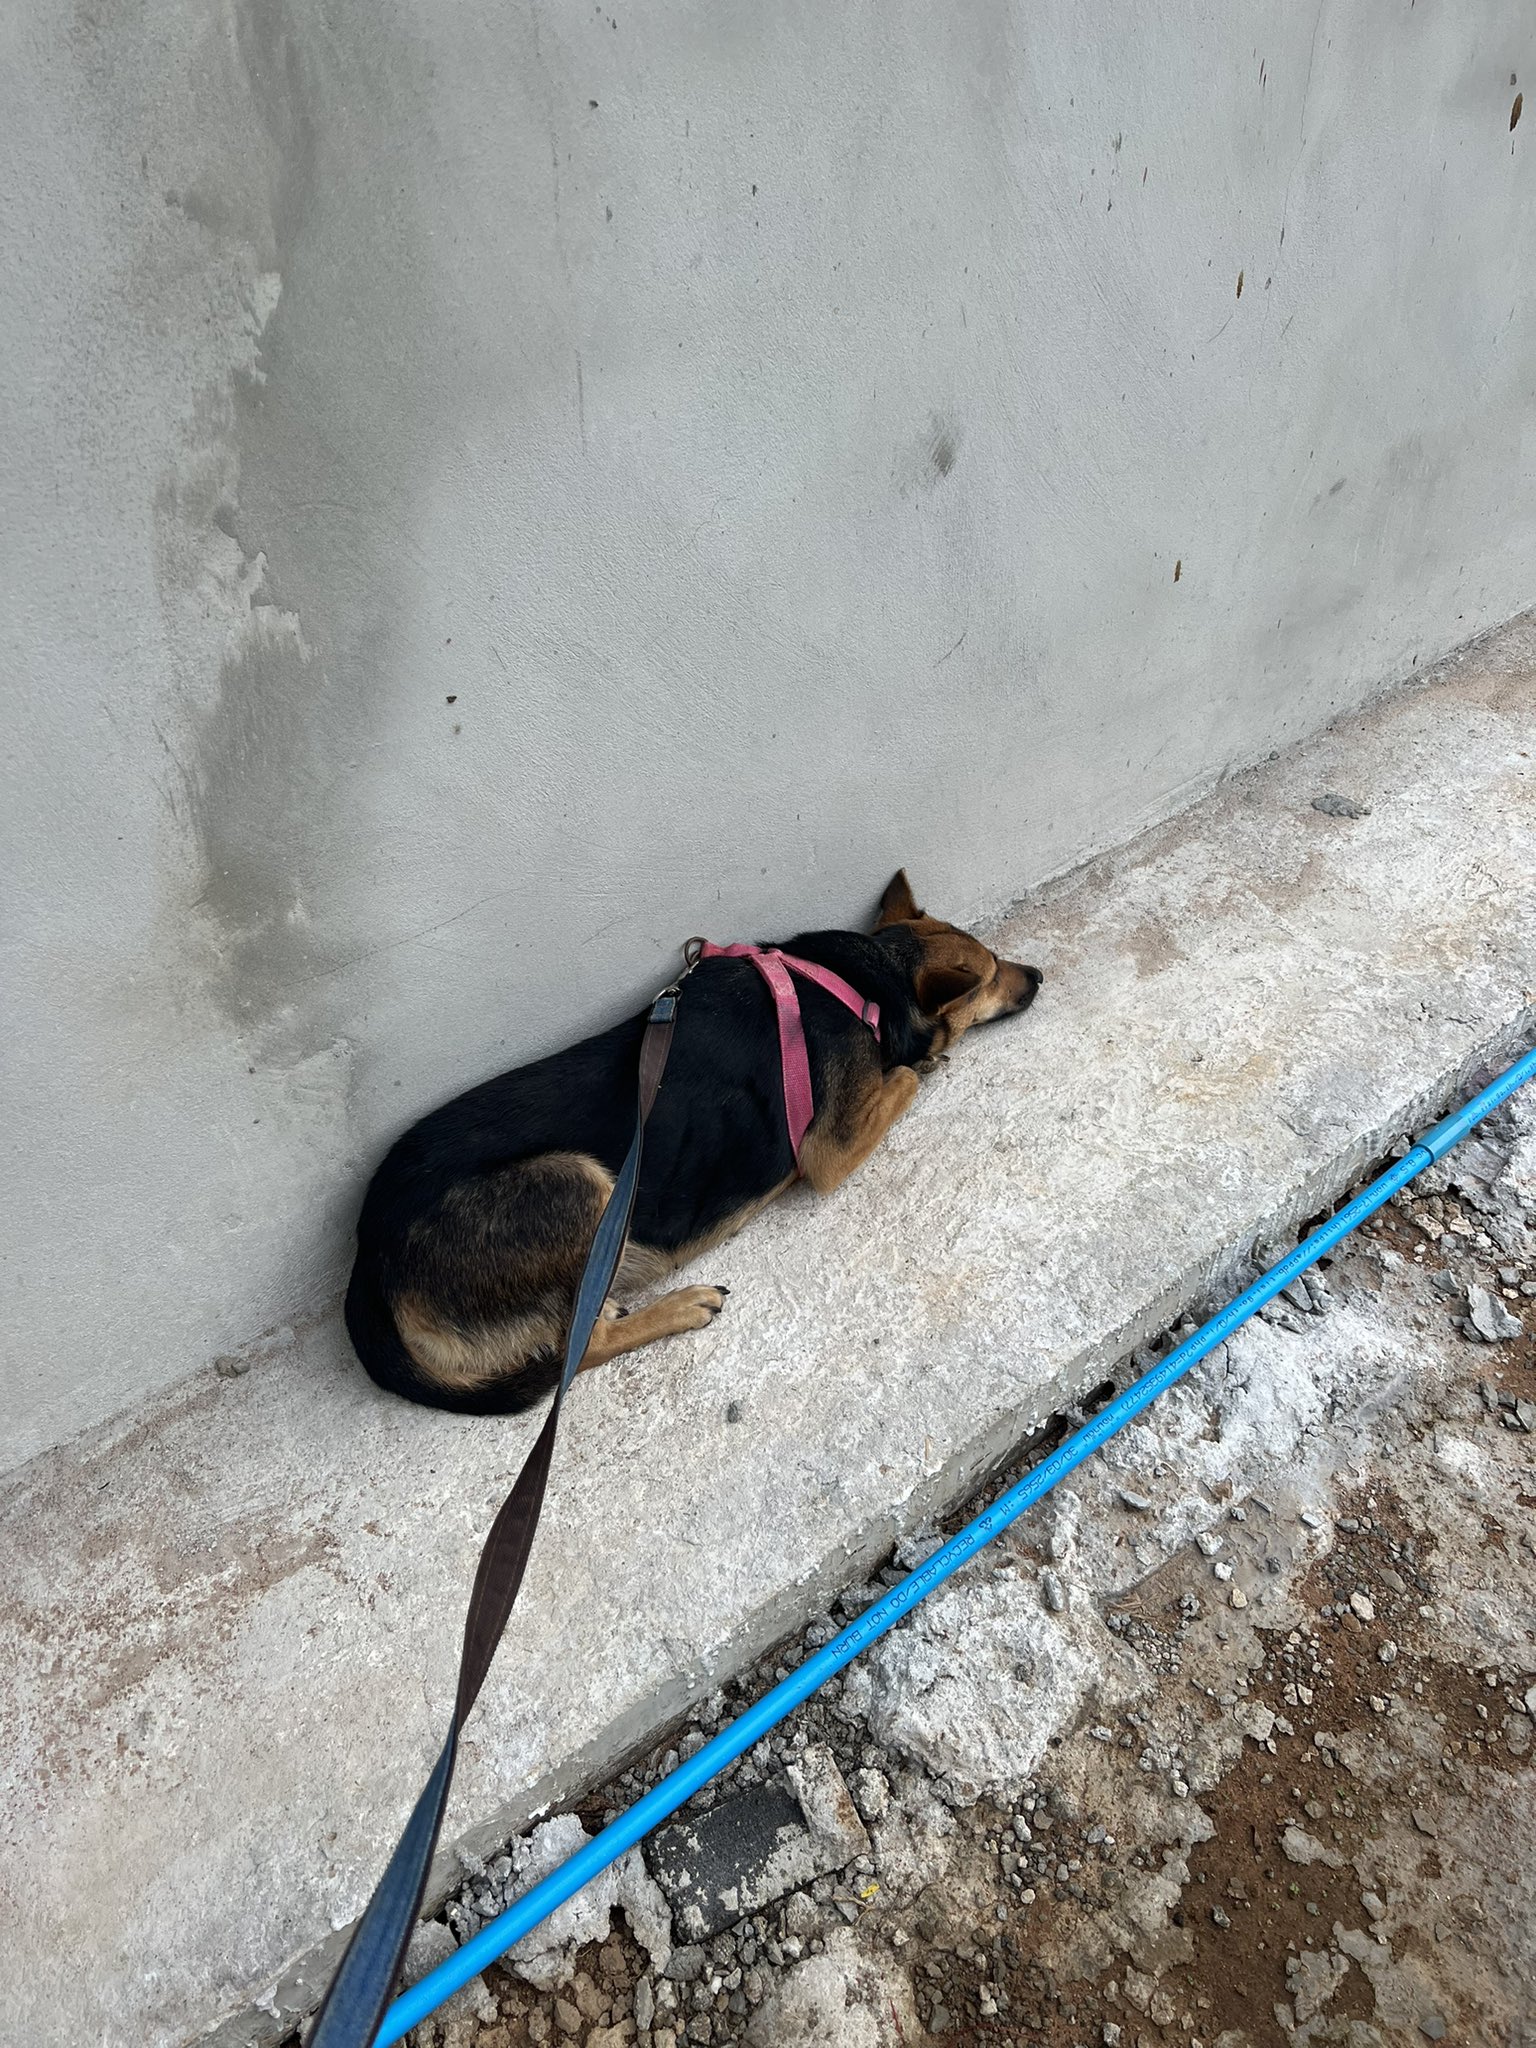 photo of injured dog lying on concrete